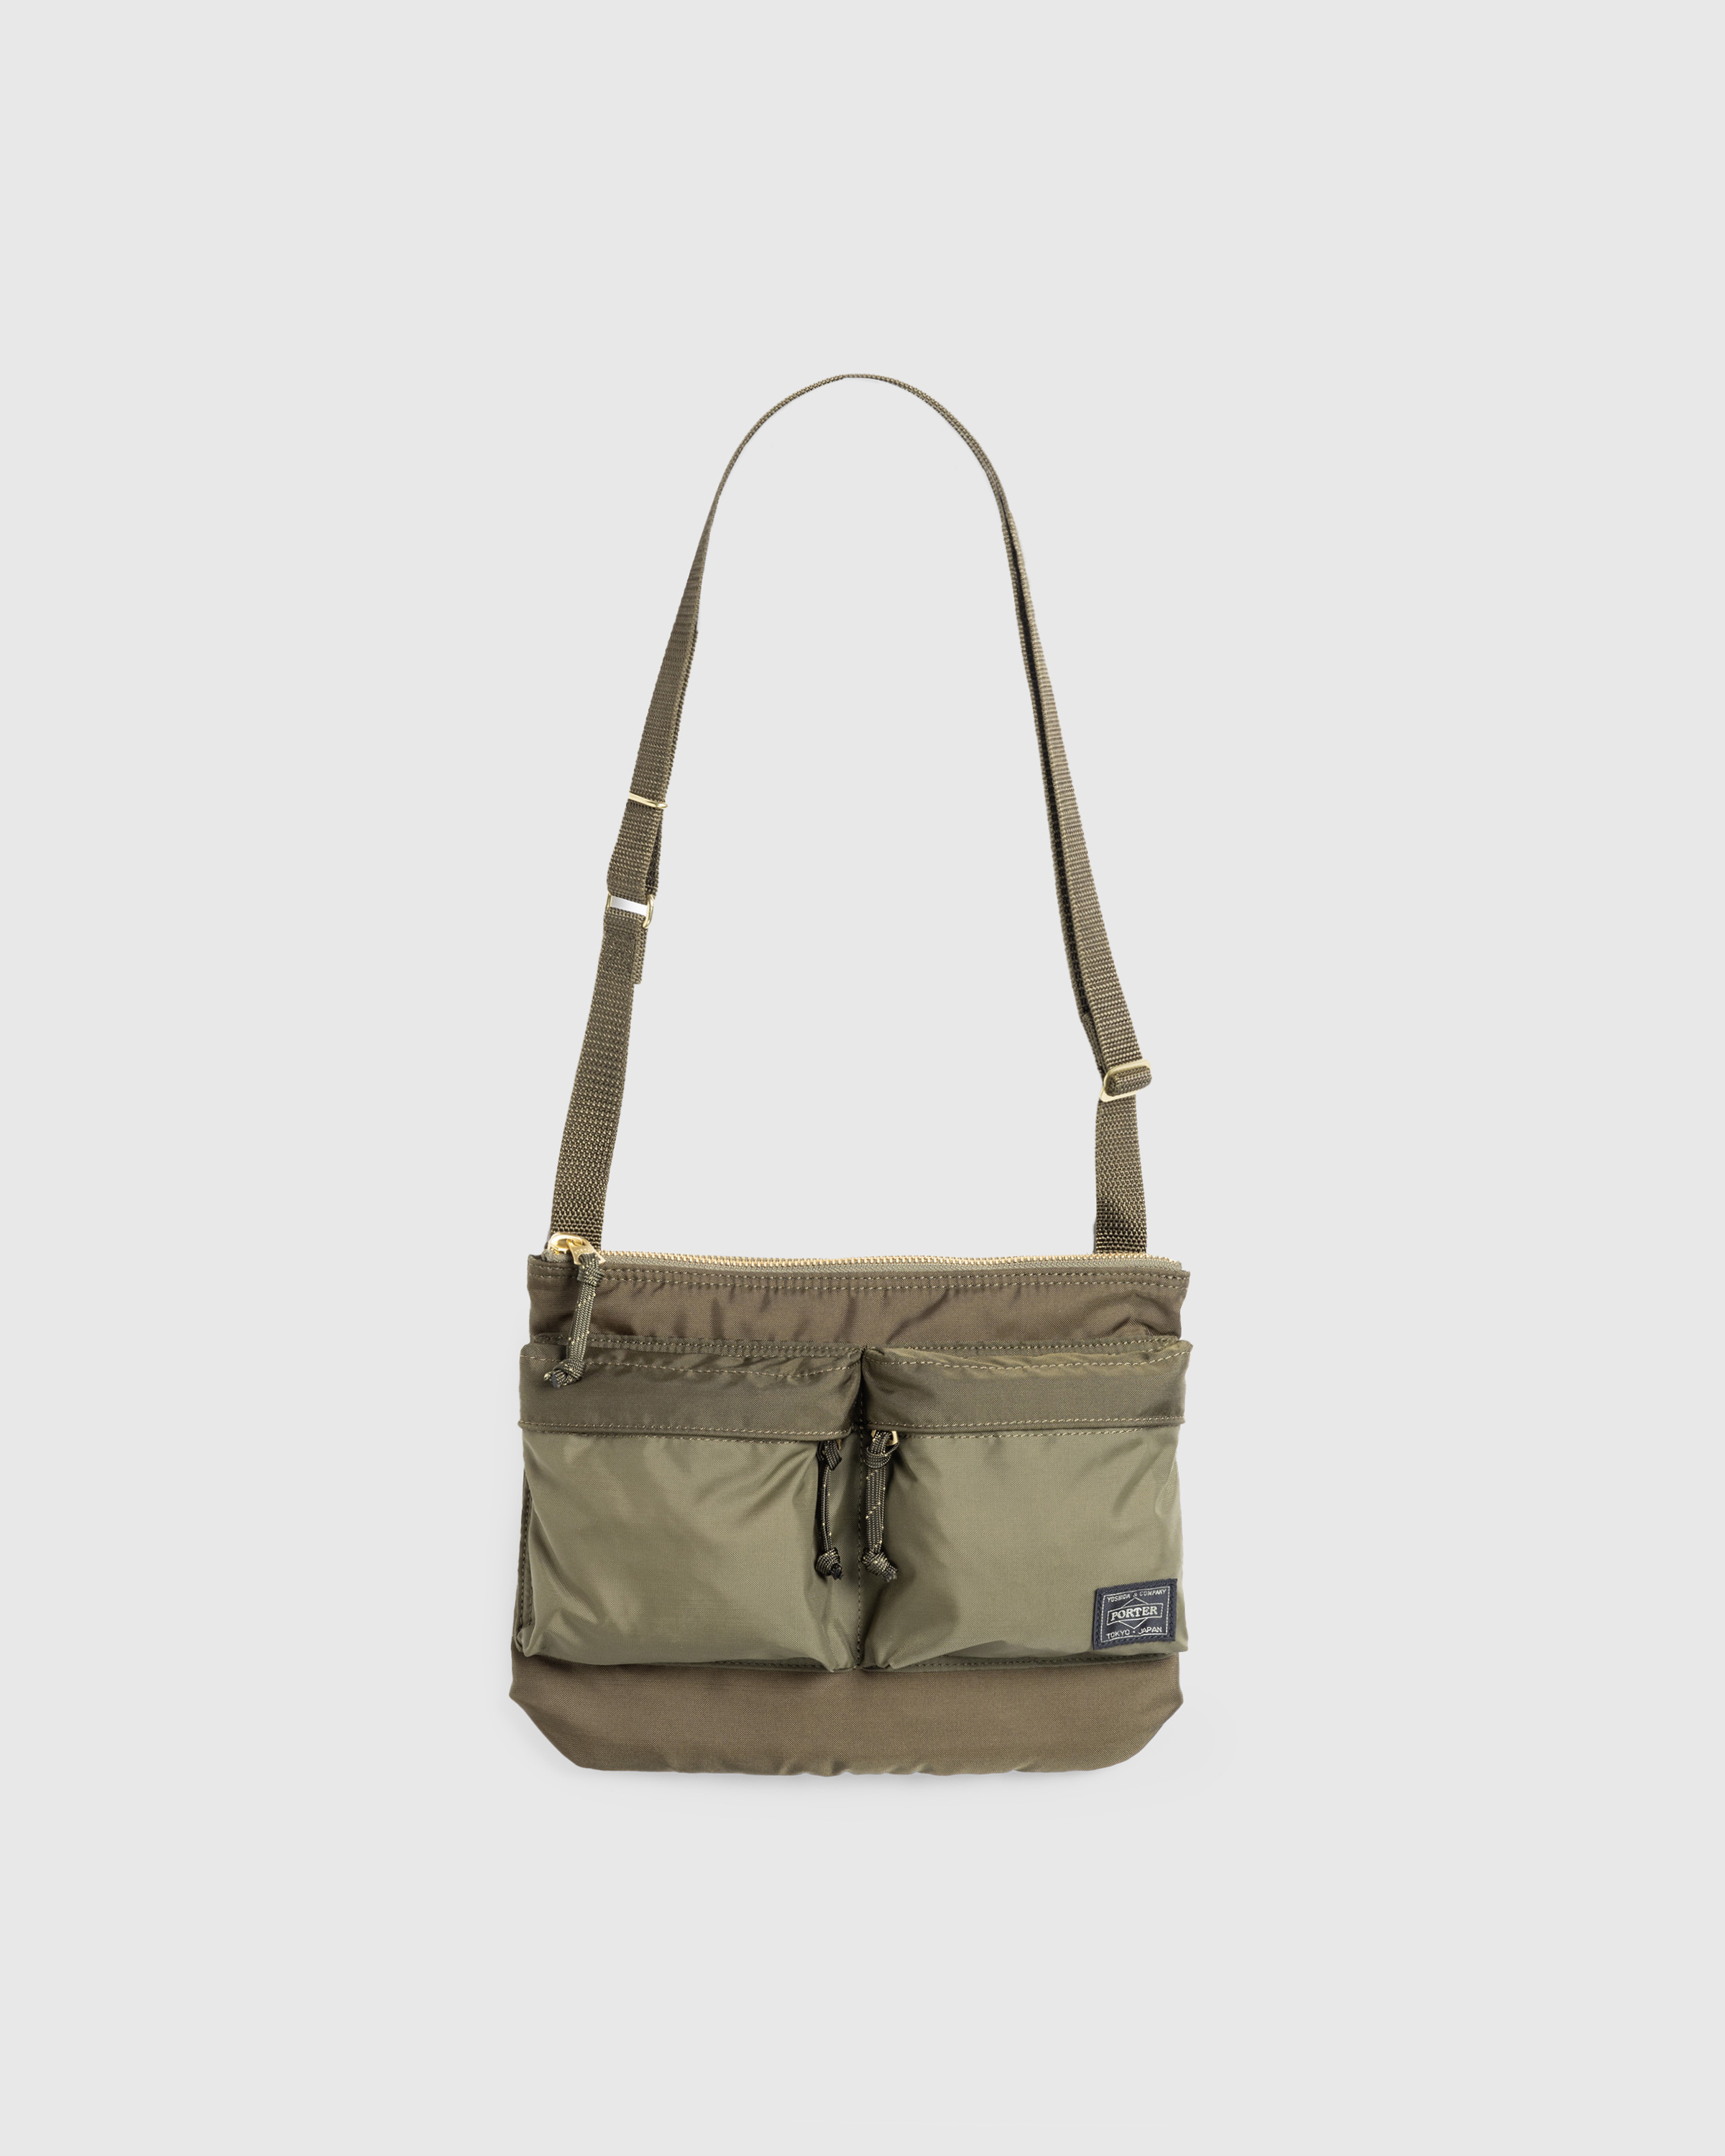 Porter-Yoshida & Co. – Force Shoulder Bag Olive Drab - Shoulder Bags - Green - Image 1